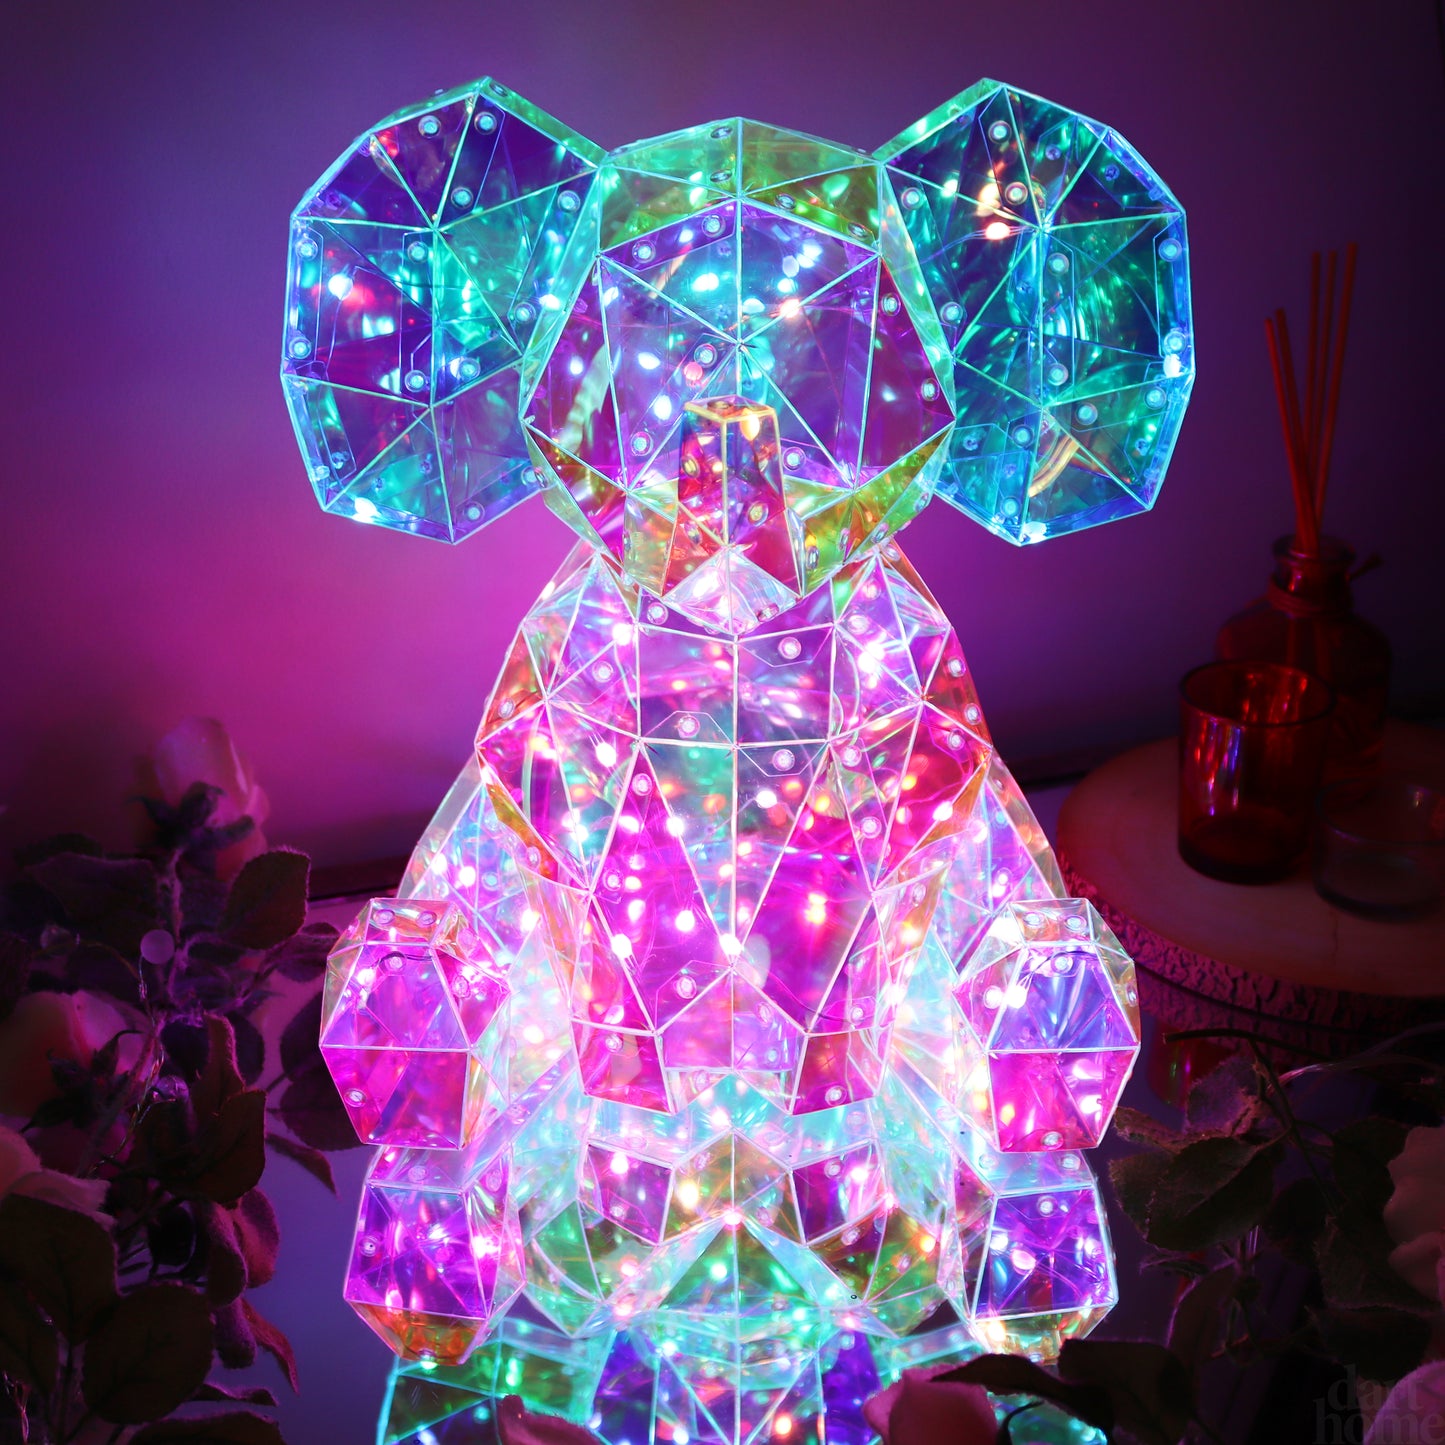 Holographic Interactive USB LED Elephant